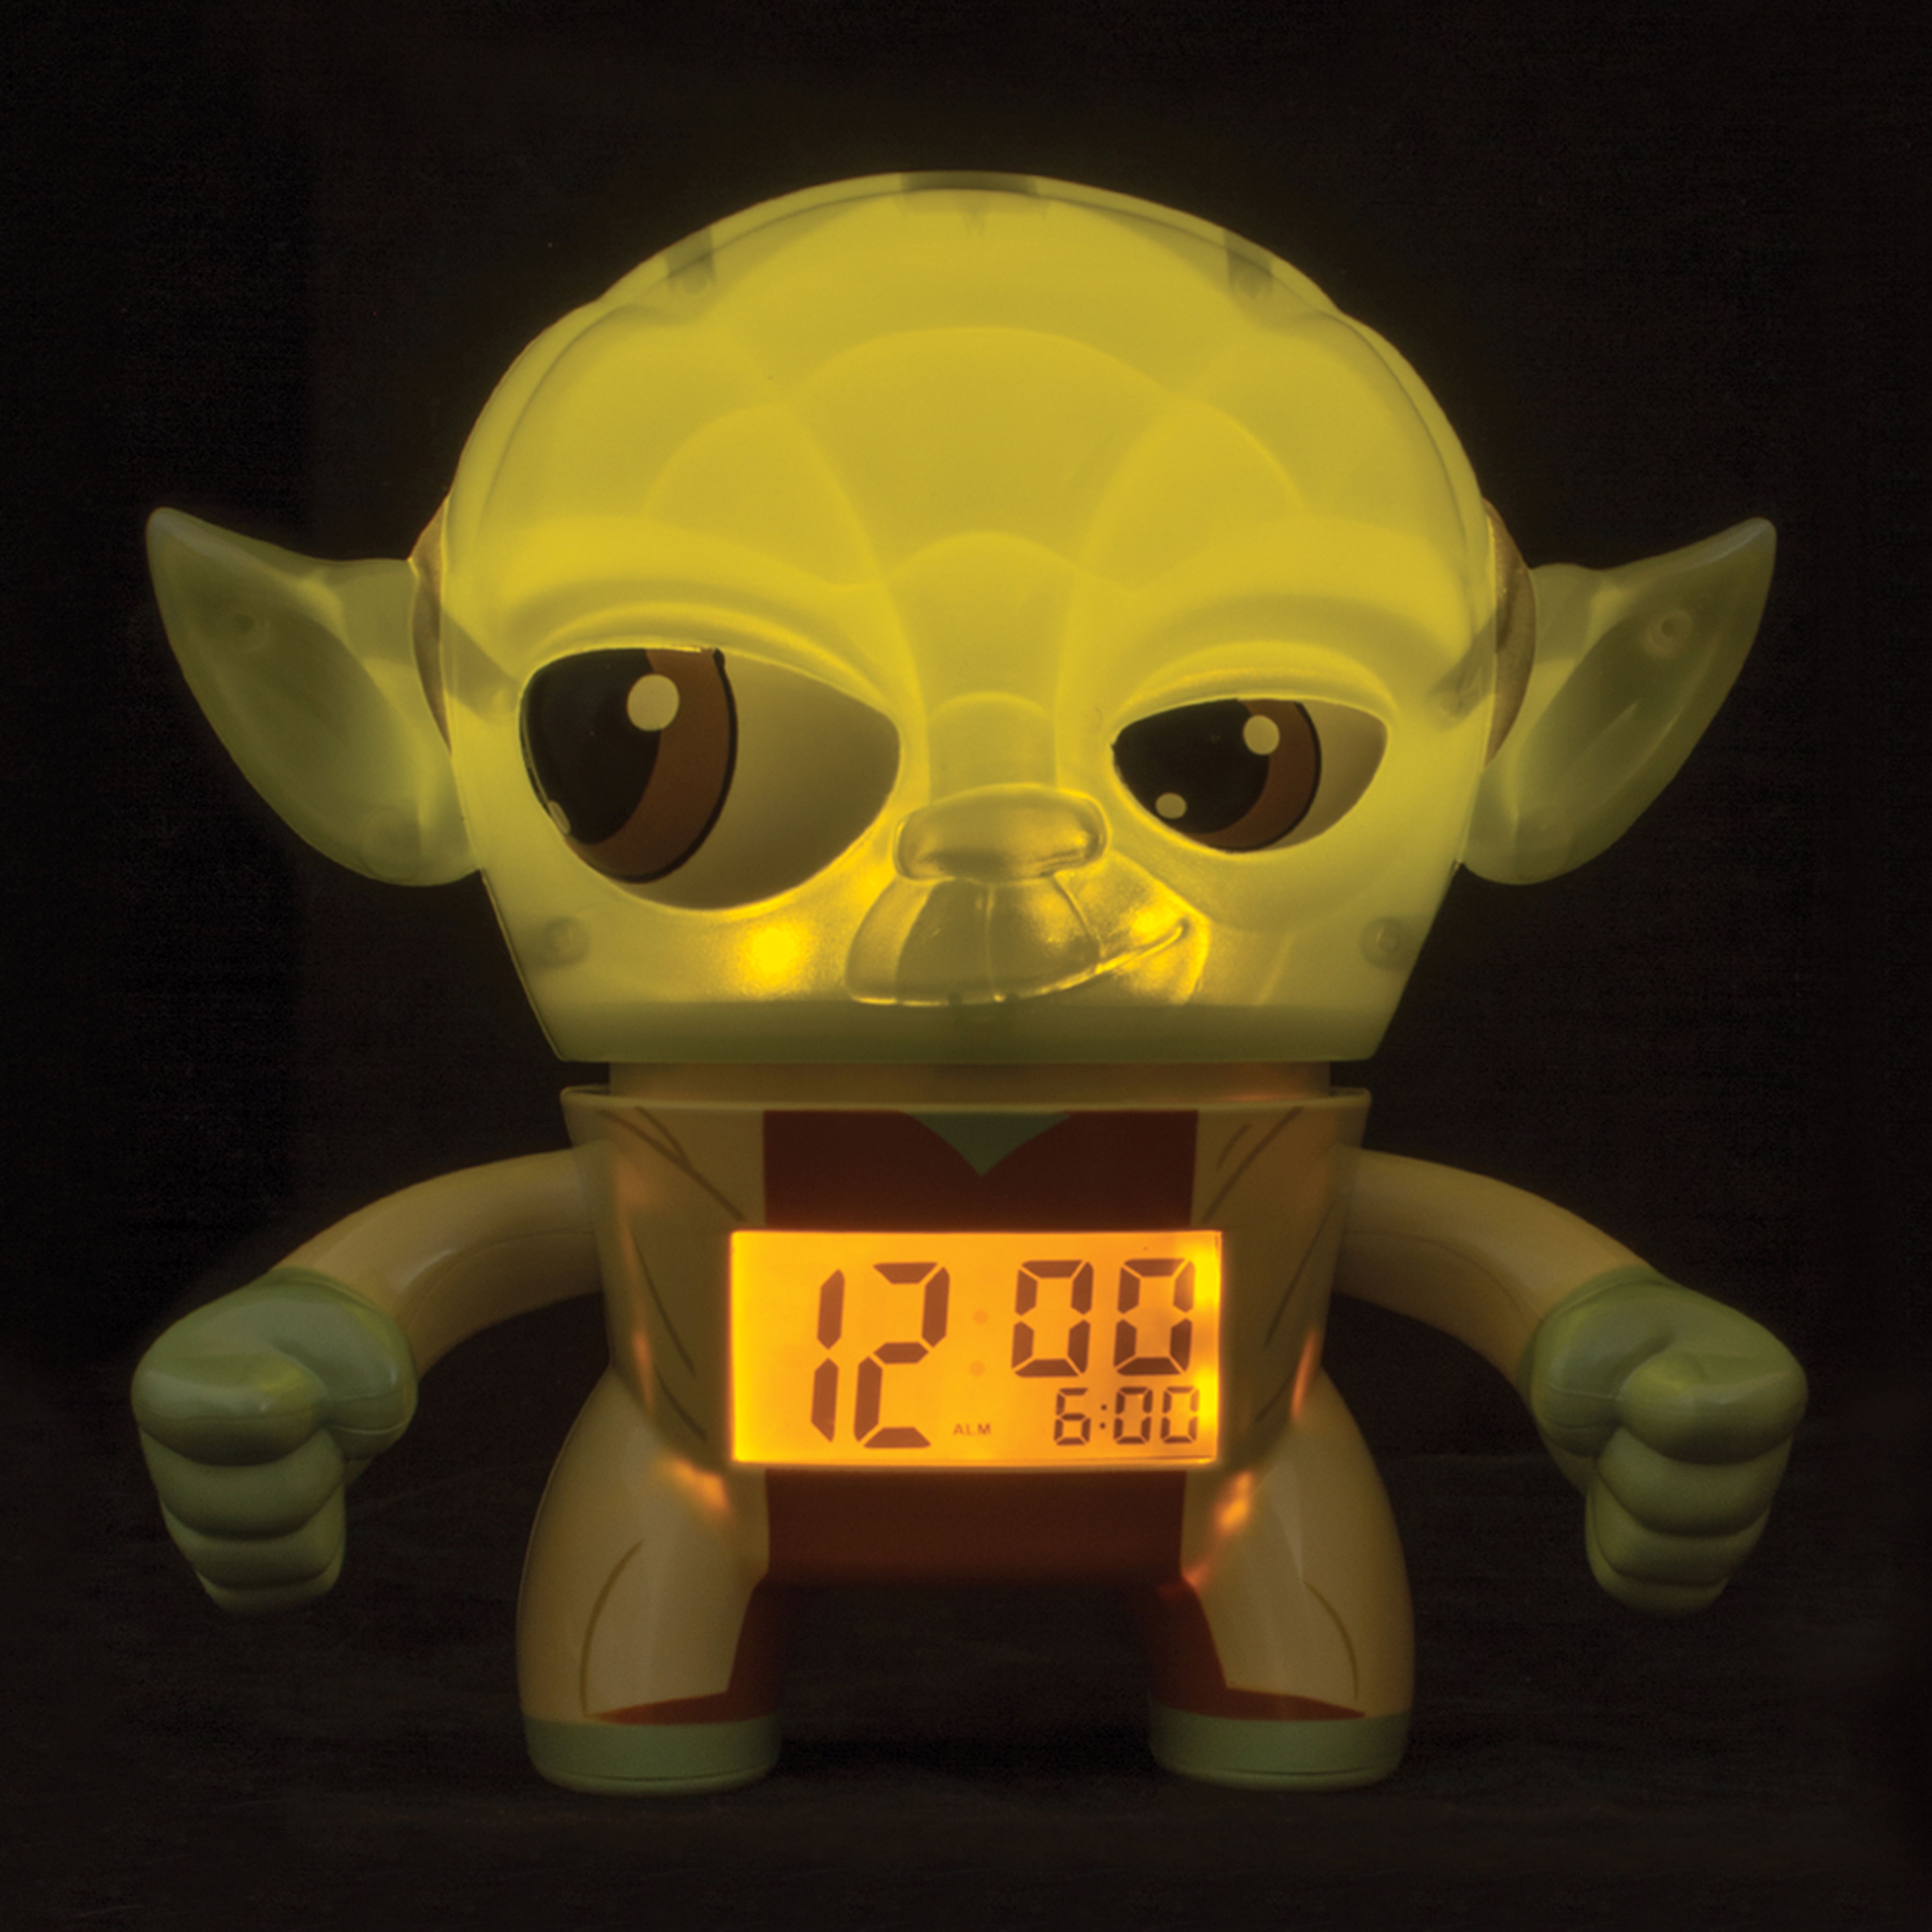 NEU OVP Uhr mit Leuchtfunktion 23cm BulbBotz 2020022 Star Wars Yoda Wecker 